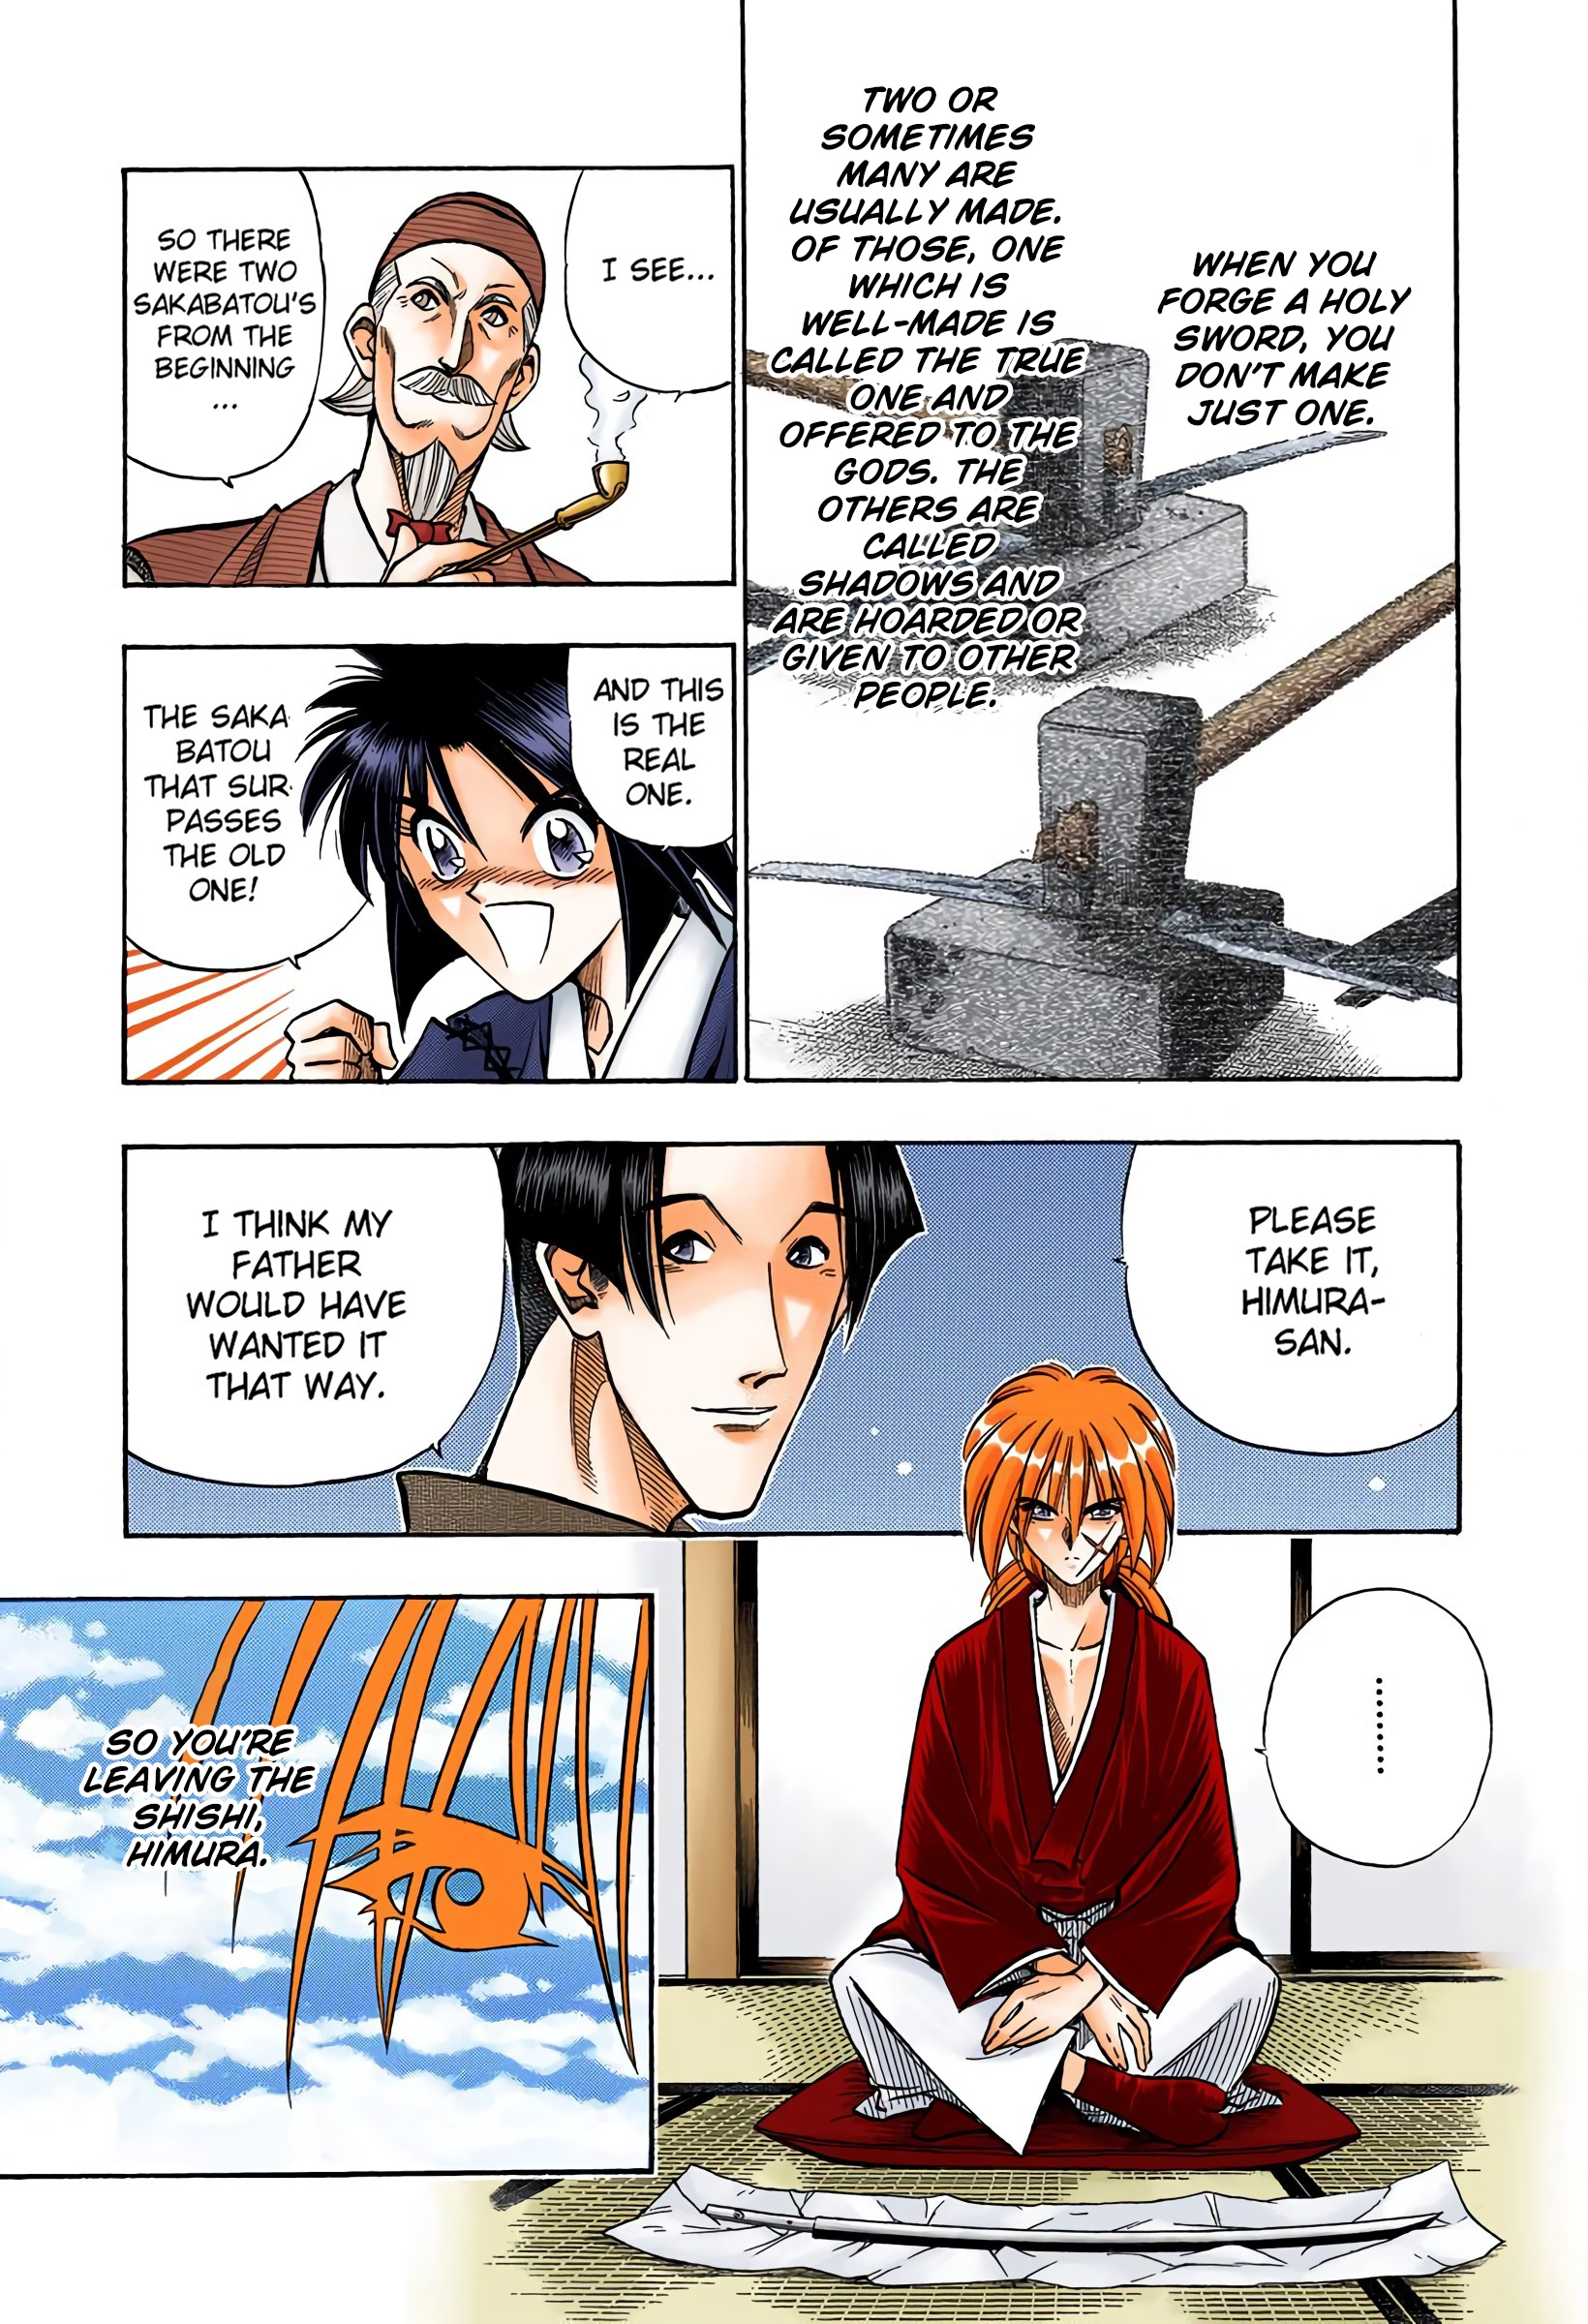 Rurouni Kenshin: Meiji Kenkaku Romantan - Digital Colored Comics Vol.10 Chapter 81